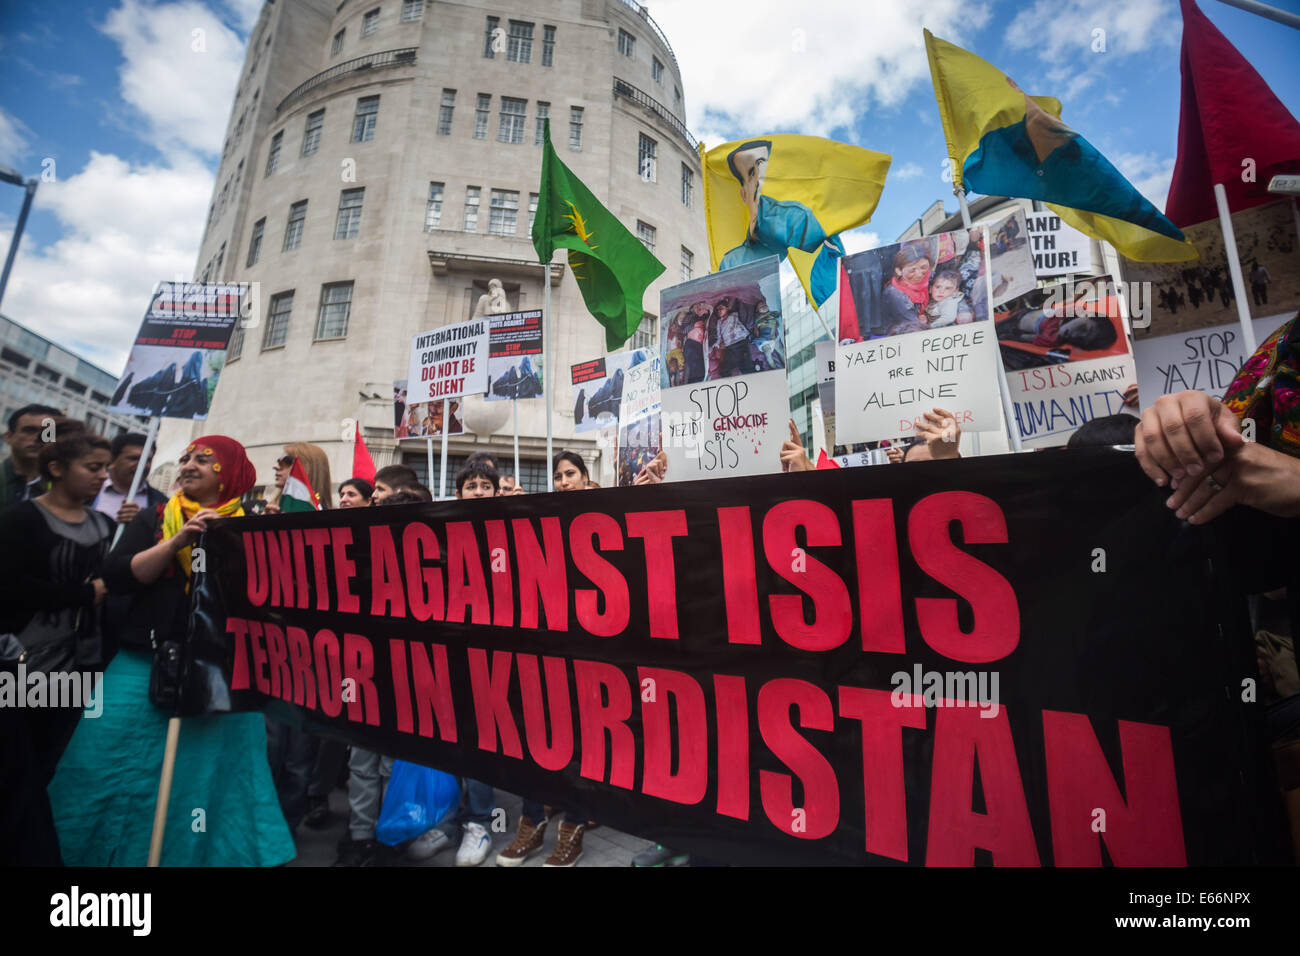 Londra, Regno Unito. 16 Ago, 2014. Protesta al di fuori di BBC HQ contro uno Stato islamico di massacri di Yazidis e curdi. Credito: Guy Corbishley/Alamy Live News Foto Stock